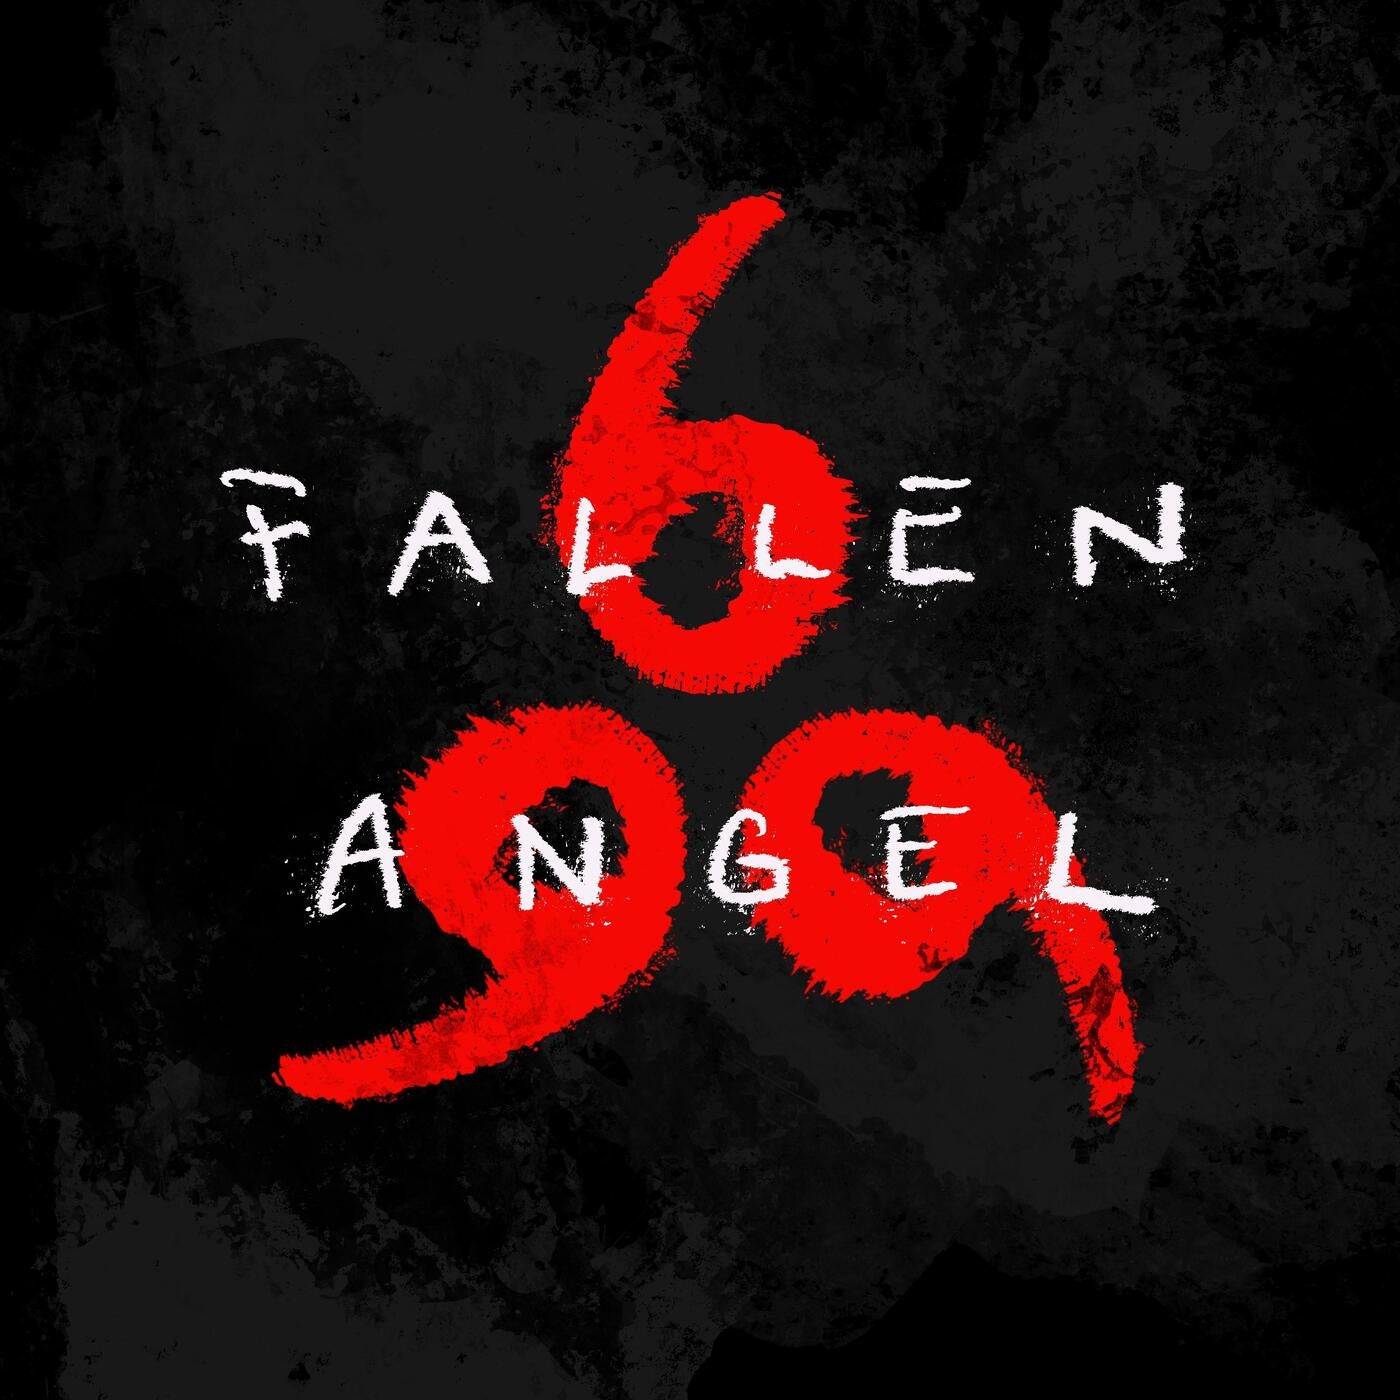 Fallen Angel (Original Mix) от 666 на Beatport.